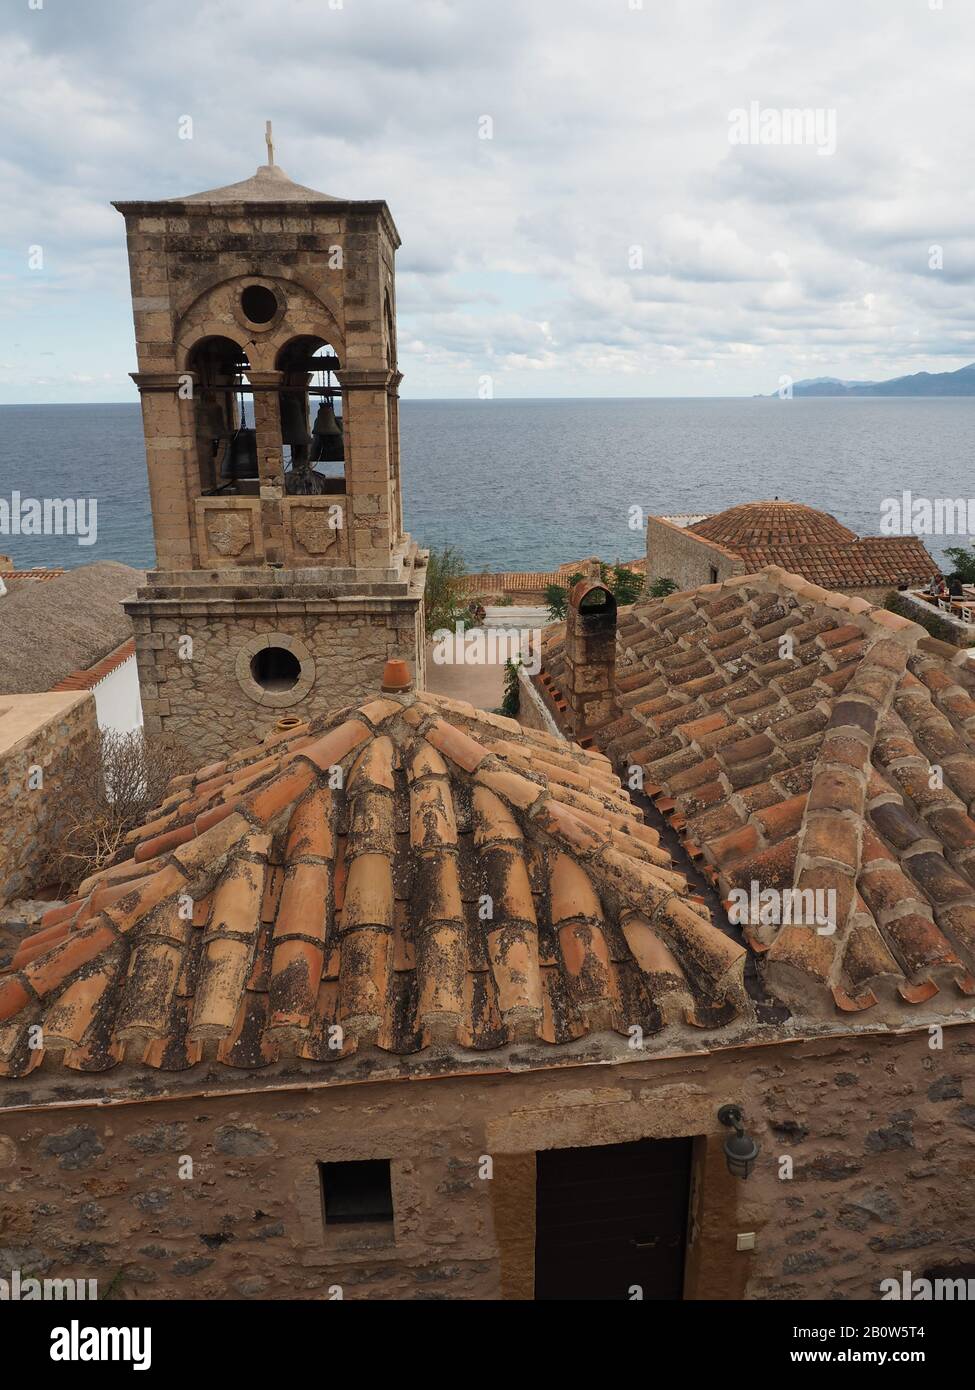 Elkomenos Christos église tour et toits de tuiles dans la ville fortifiée de Monemvasia, Laconia, Péloponnèse, Grèce. Bleu mer derrière. Banque D'Images